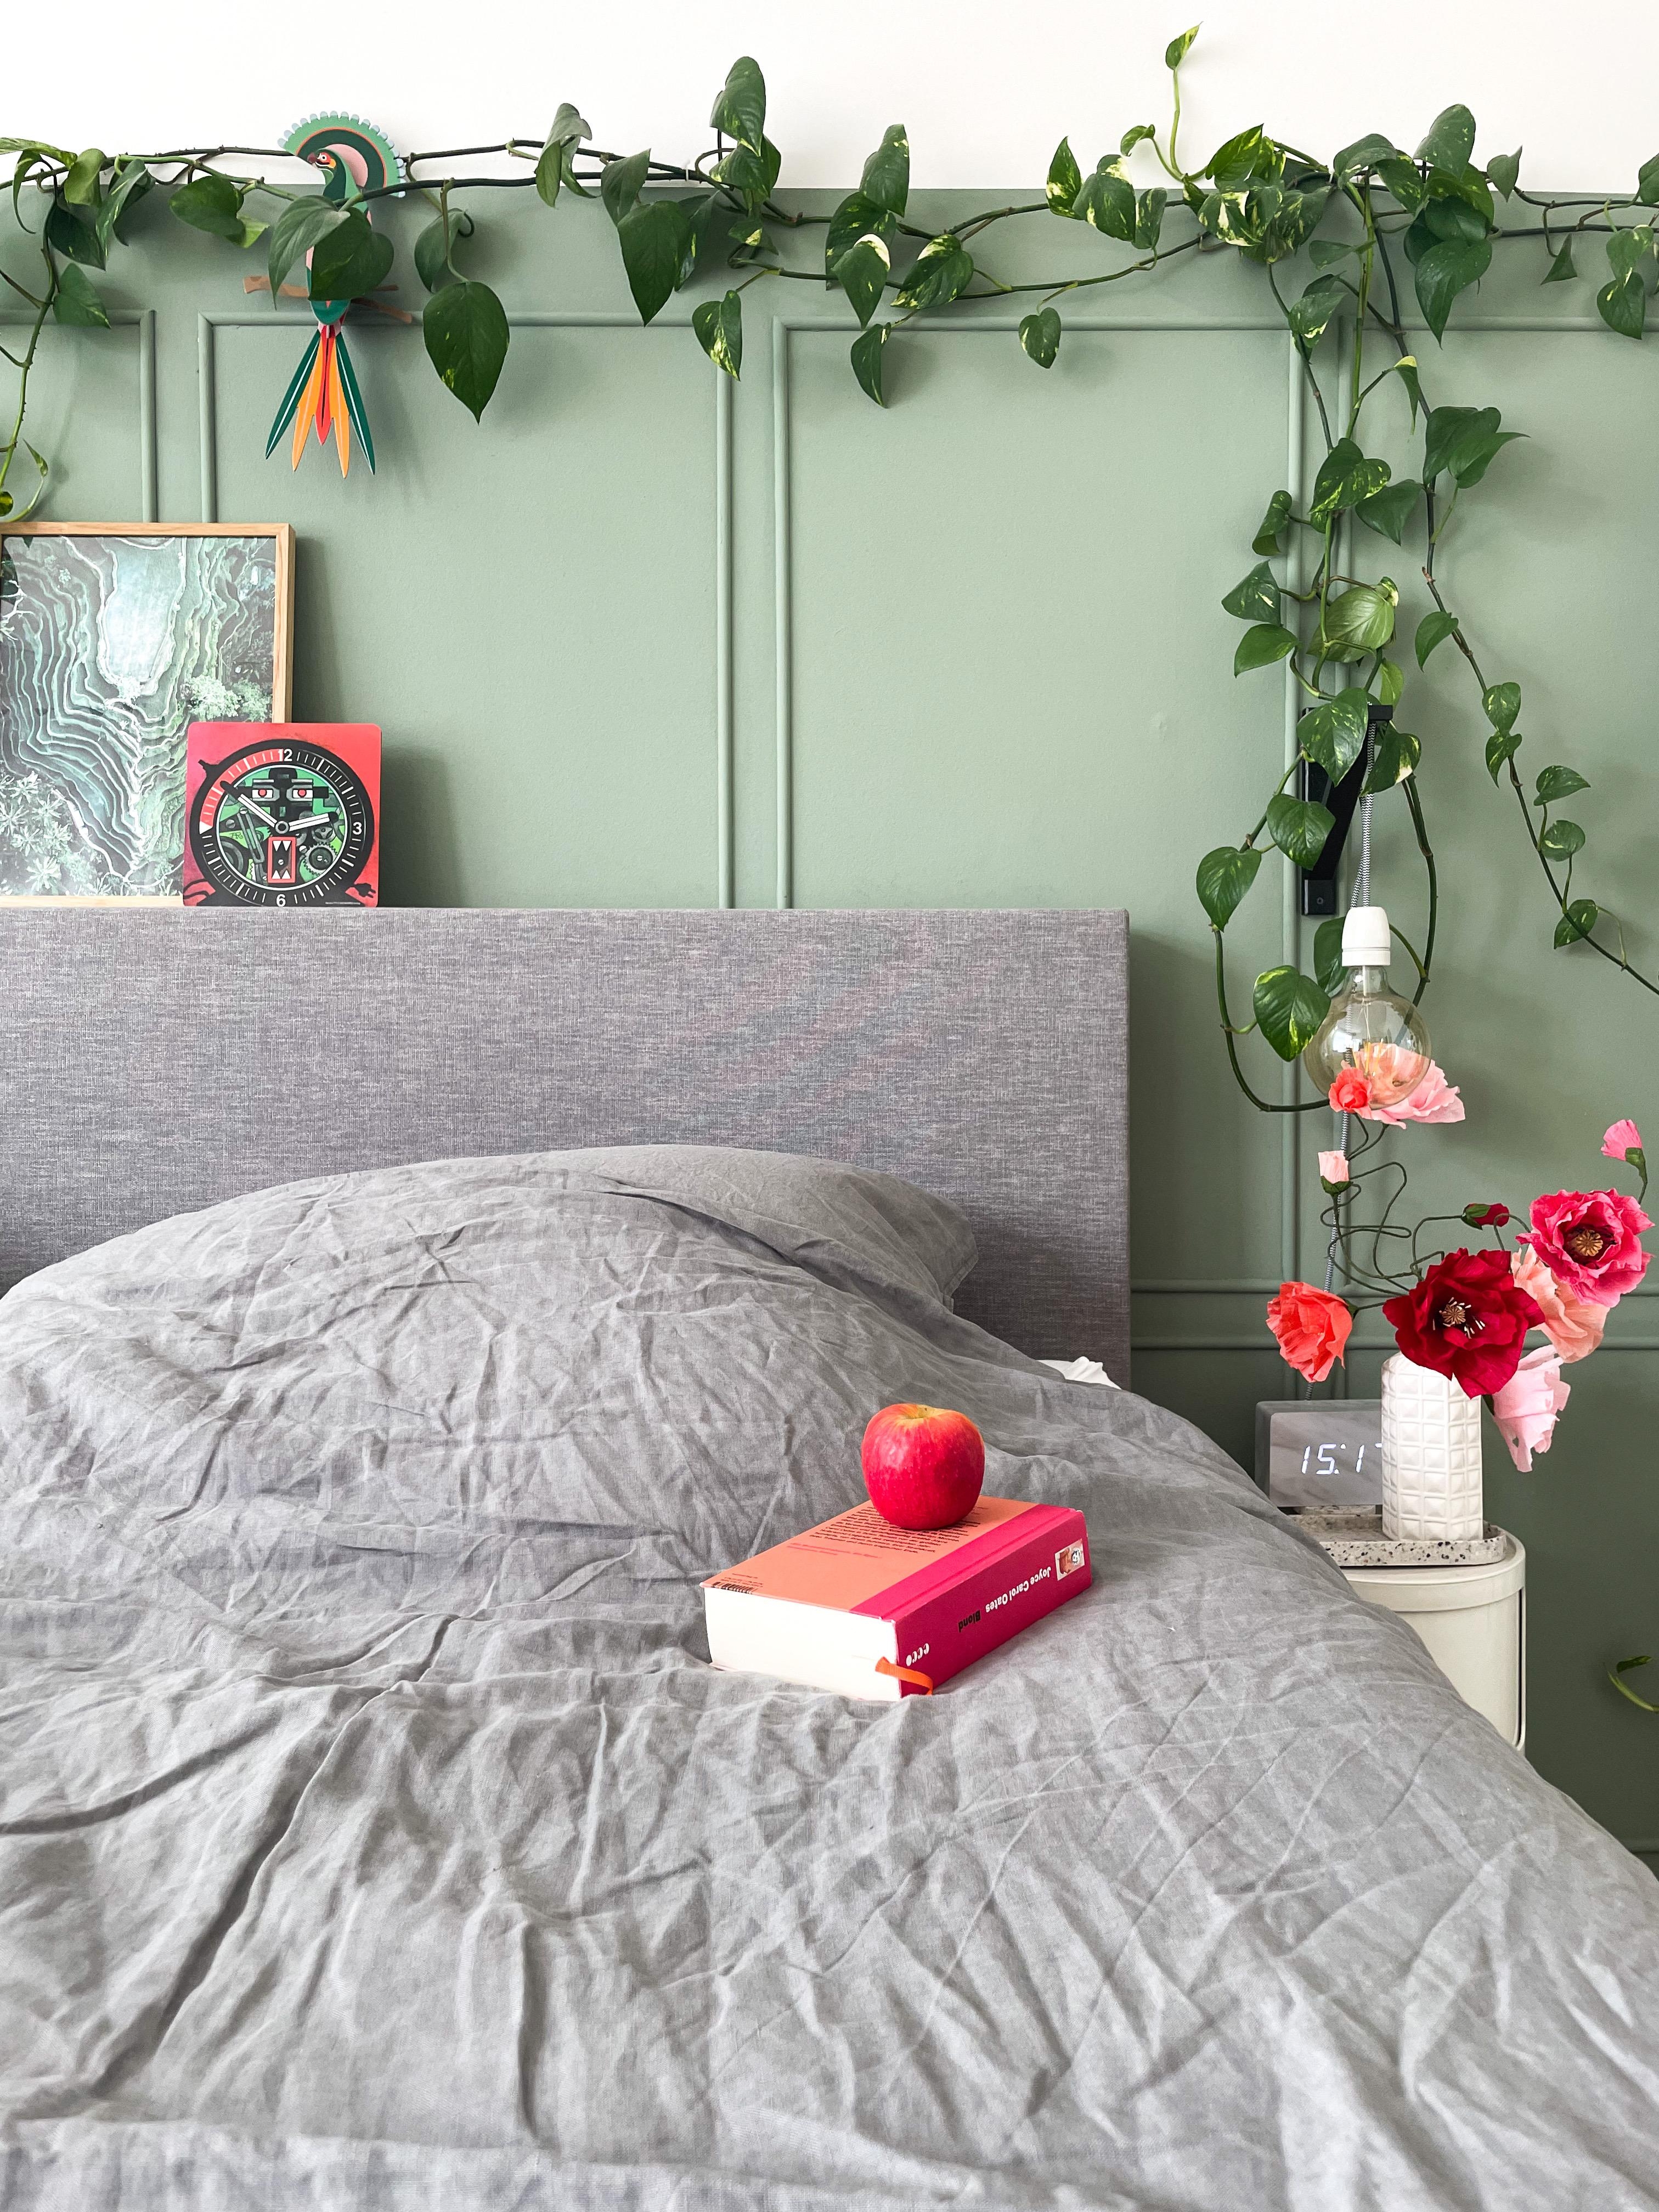 Apfel der Erkenntnis

#Bett #Bettwäsche #Schlafzimmer #Wandgestaltung #Grün #Pflanze